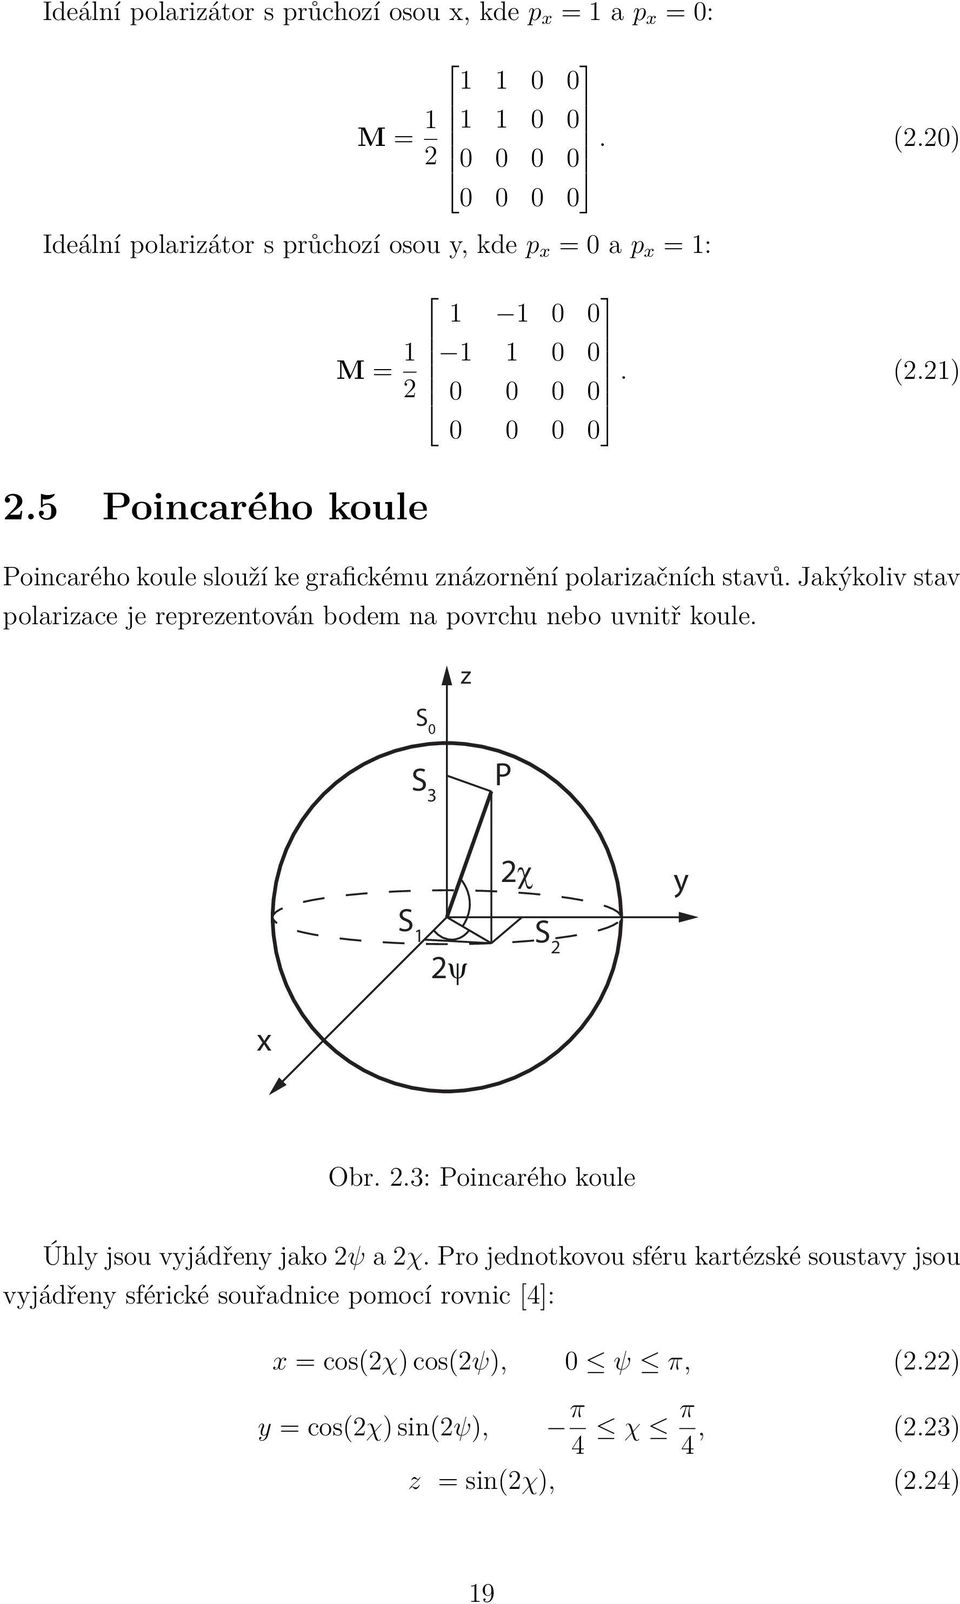 5 Poincarého koule Poincarého koule slouží ke grafickému znázornění polarizačních stavů. Jakýkoliv stav polarizace je reprezentován bodem na povrchu nebo uvnitř koule.